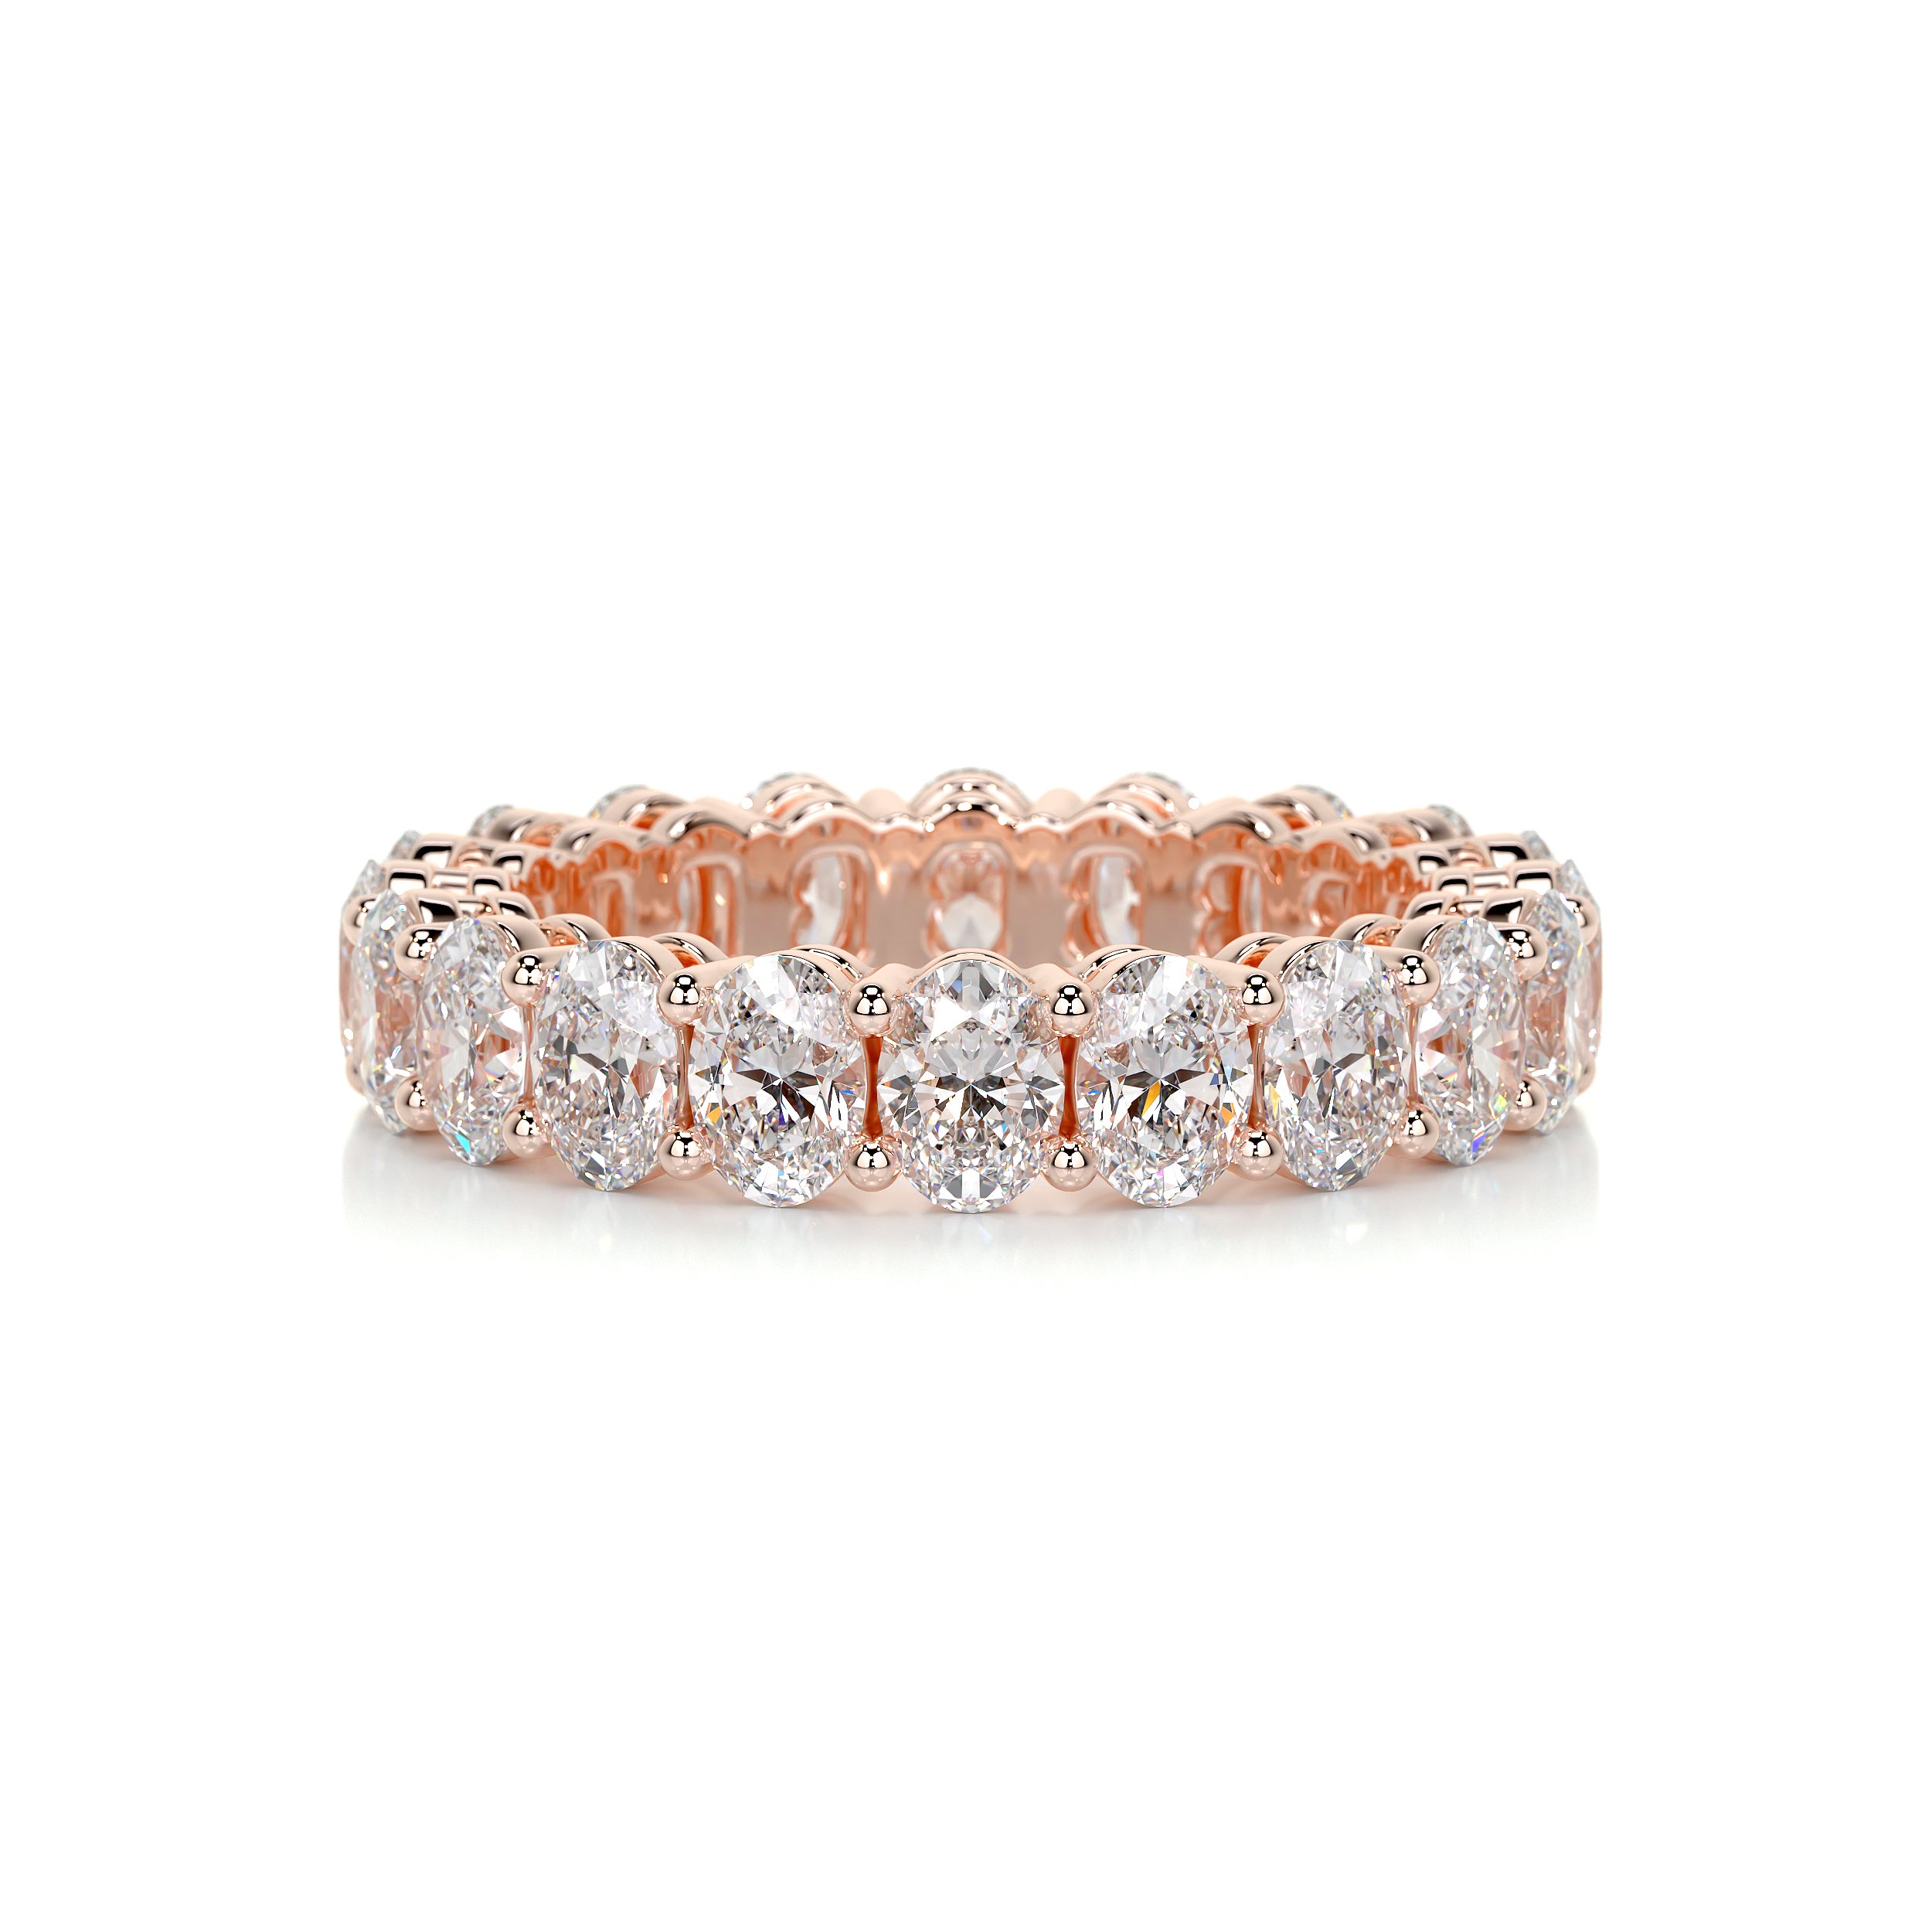 Julia Diamond Wedding Ring   (3.5 Carat) -14K Rose Gold